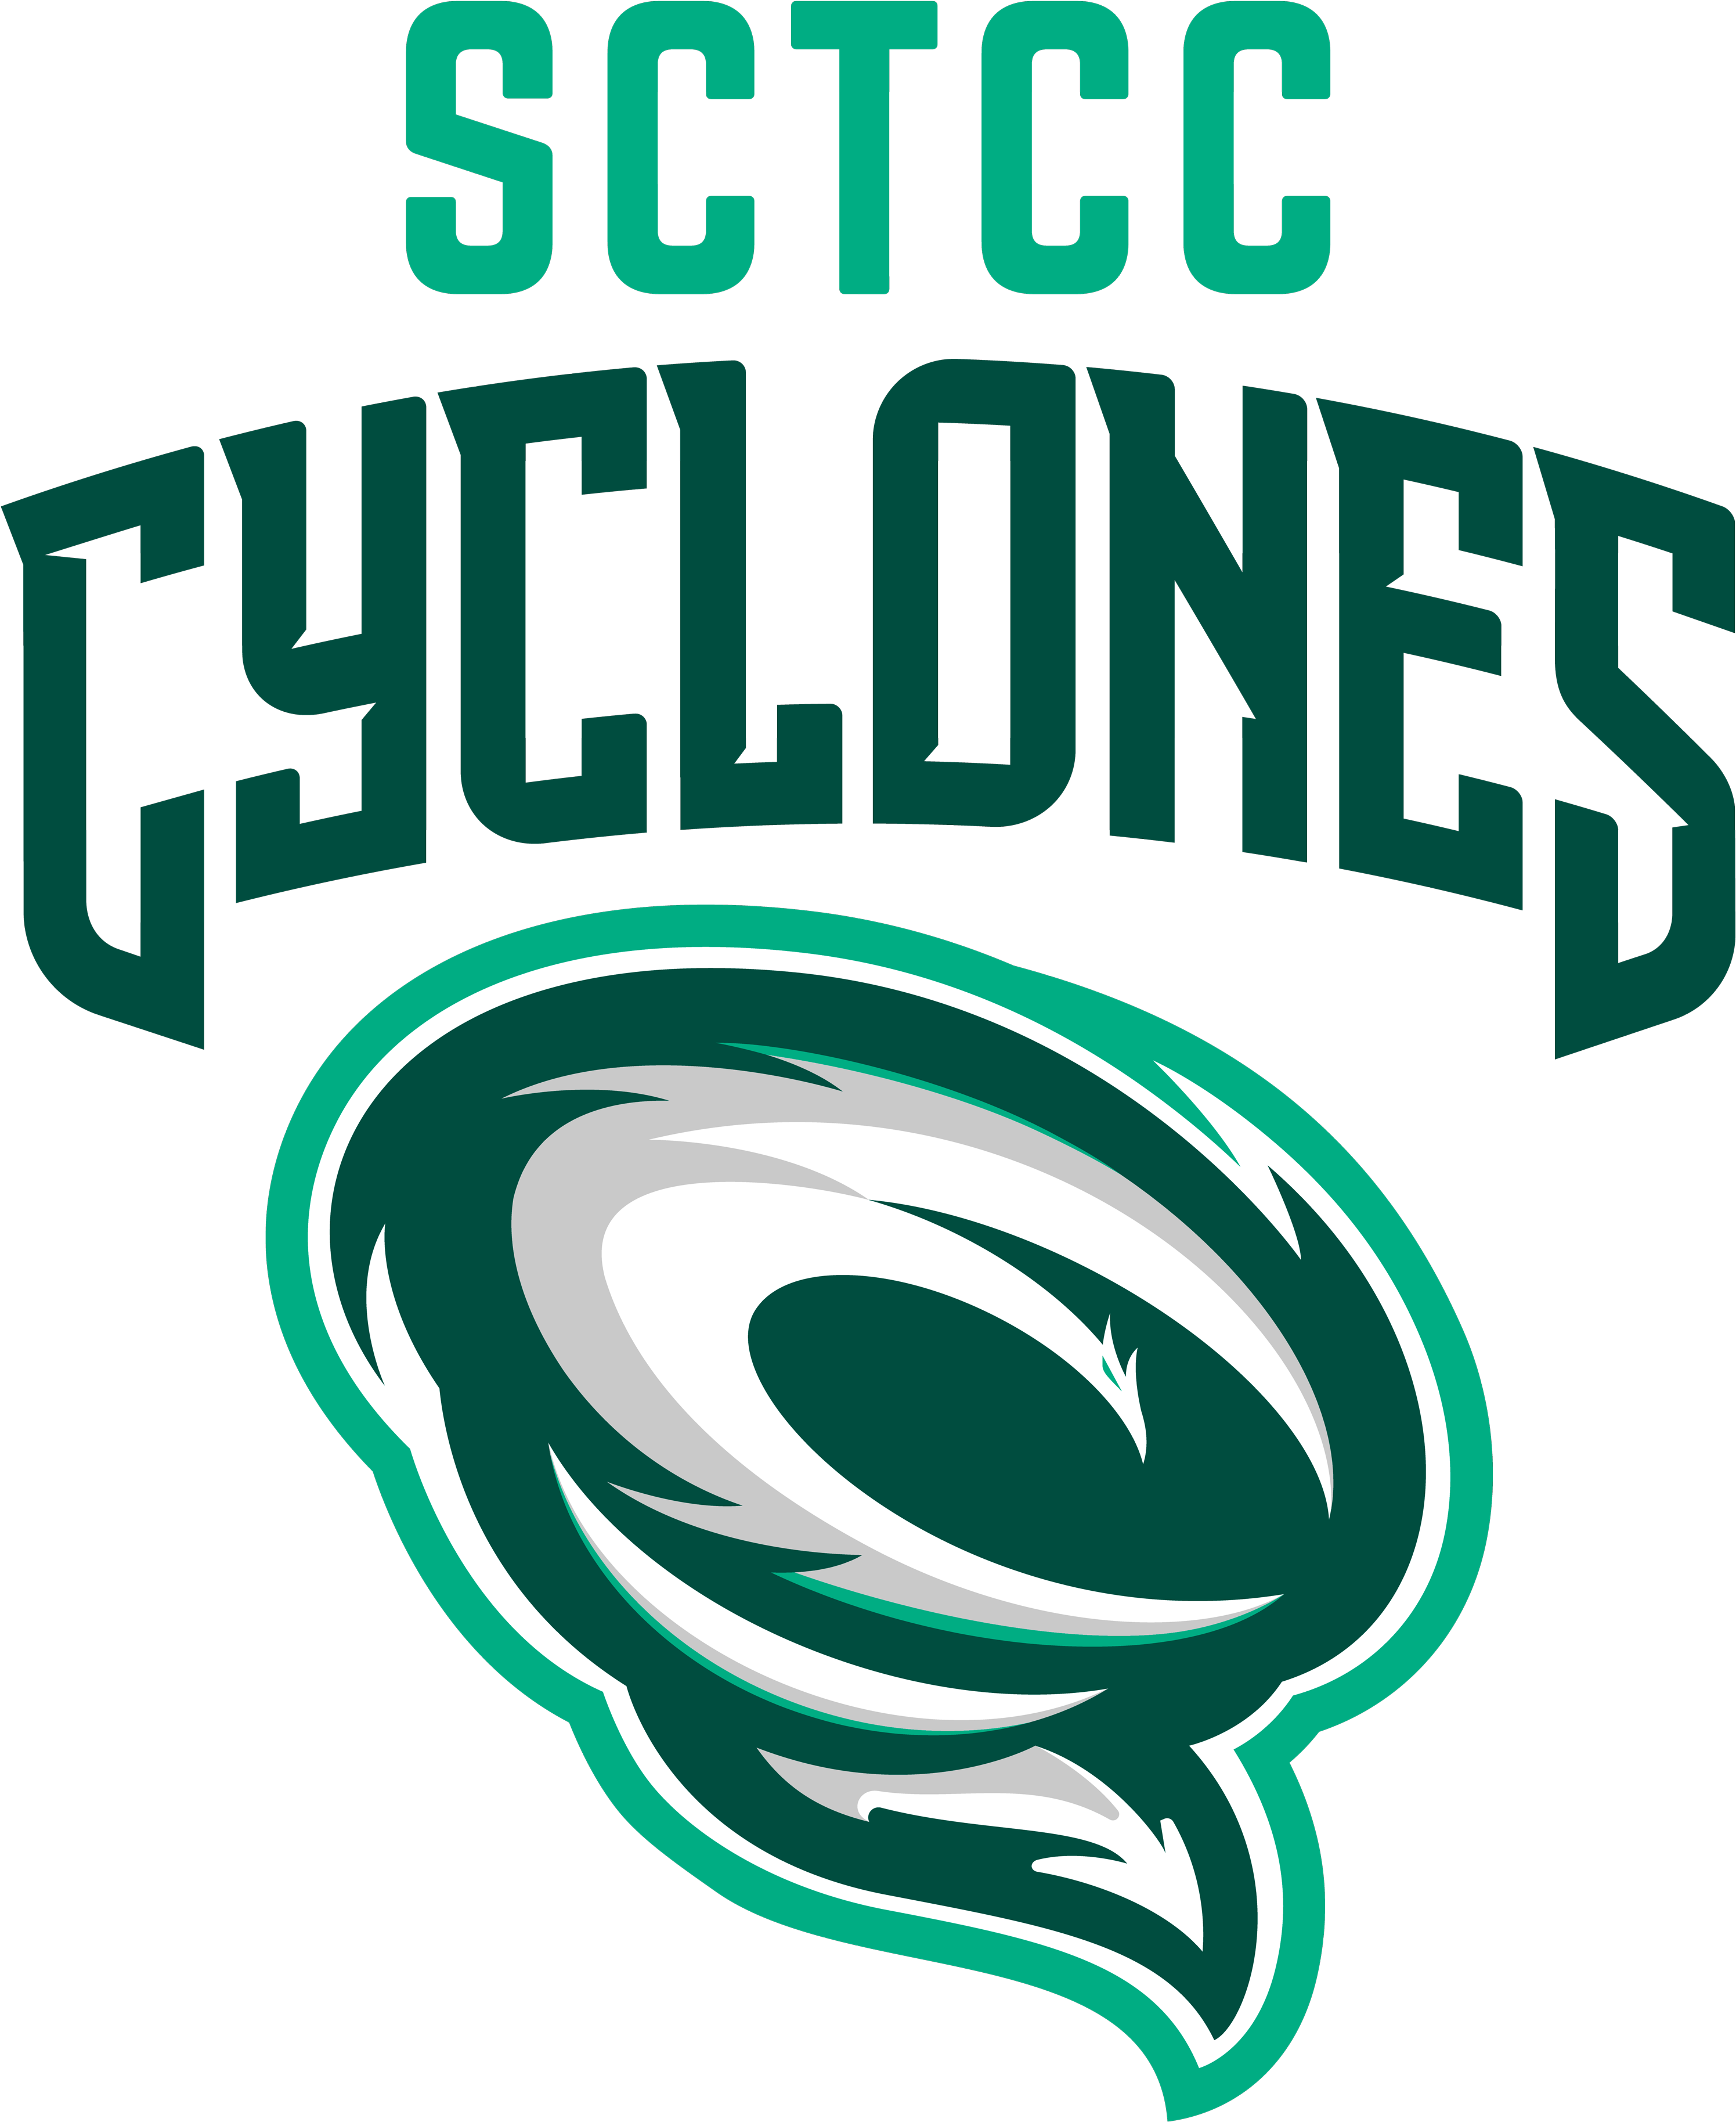 Cyclones-logo - St Cloud Tech Cyclones (3000x3658)